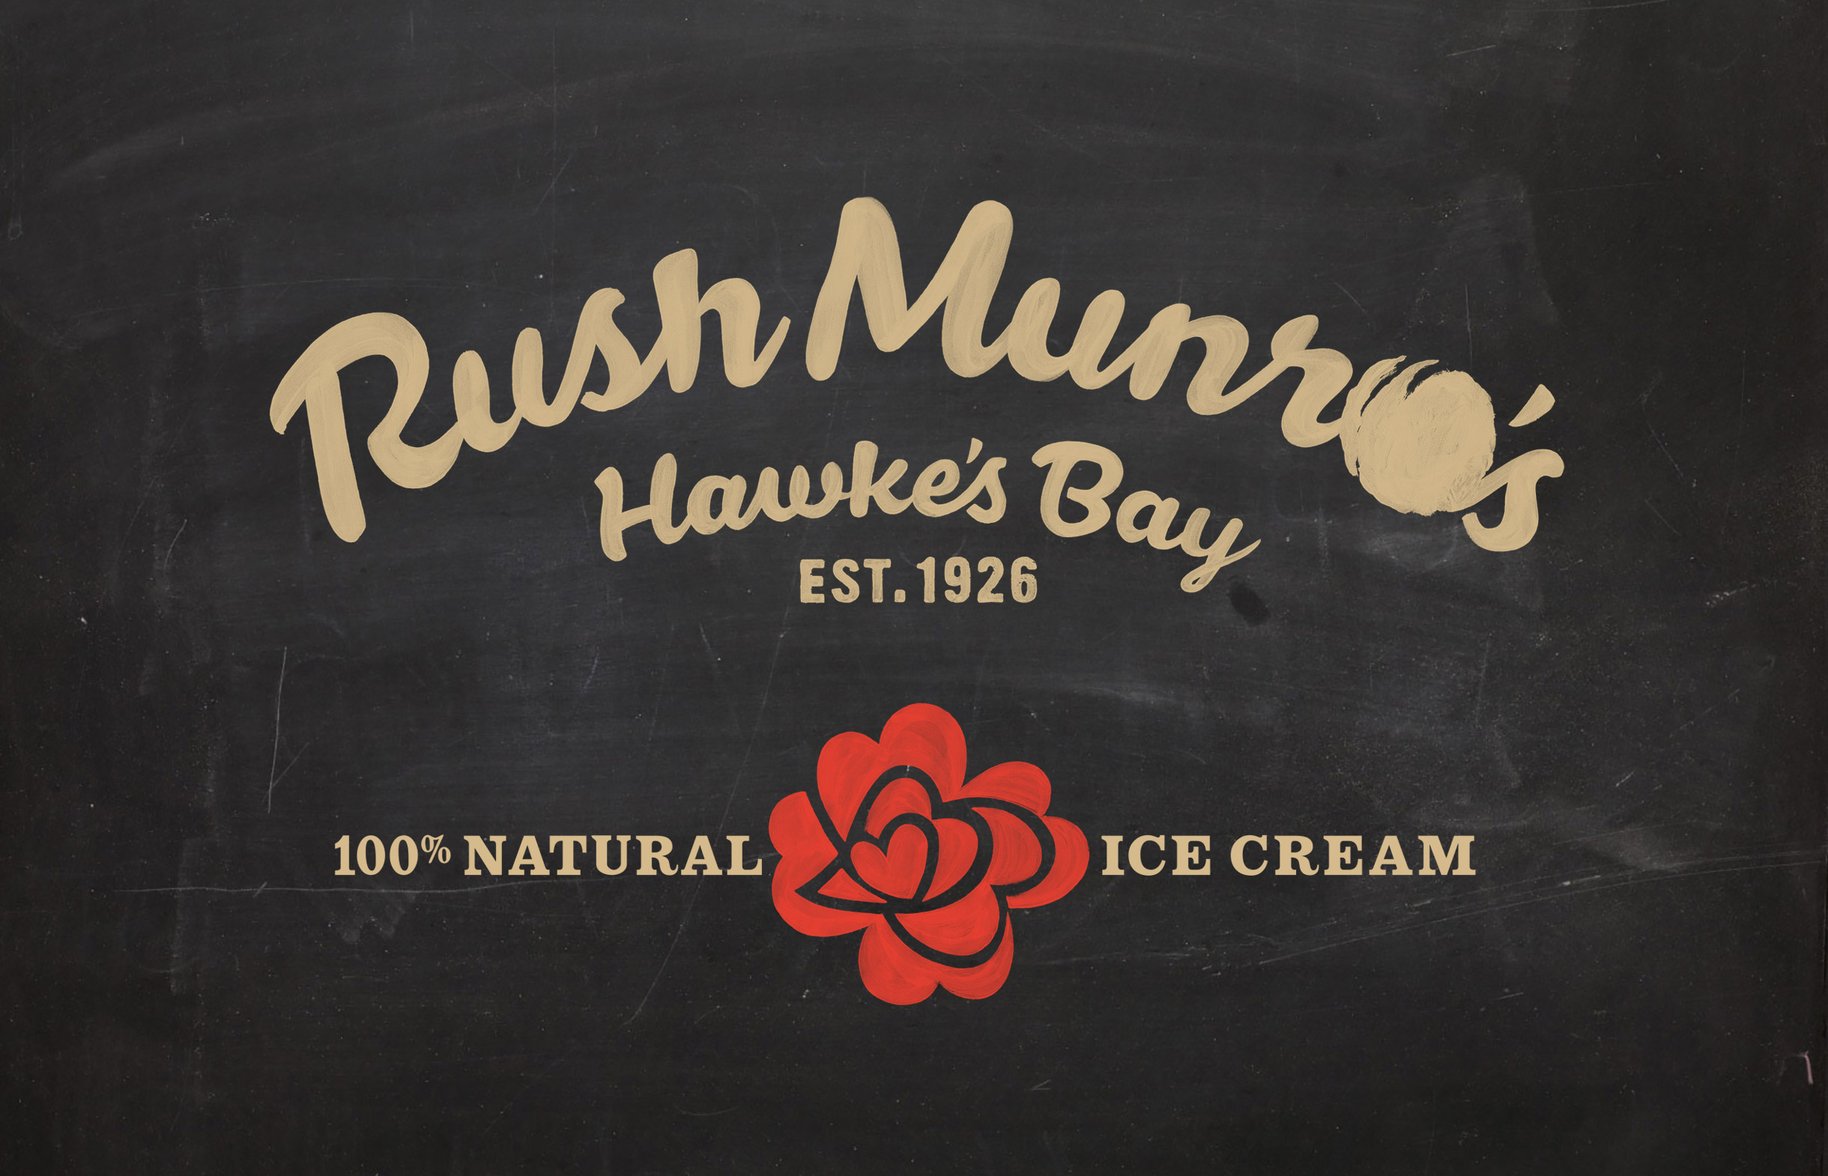 Rush Munro's logo chalkboard graphic 